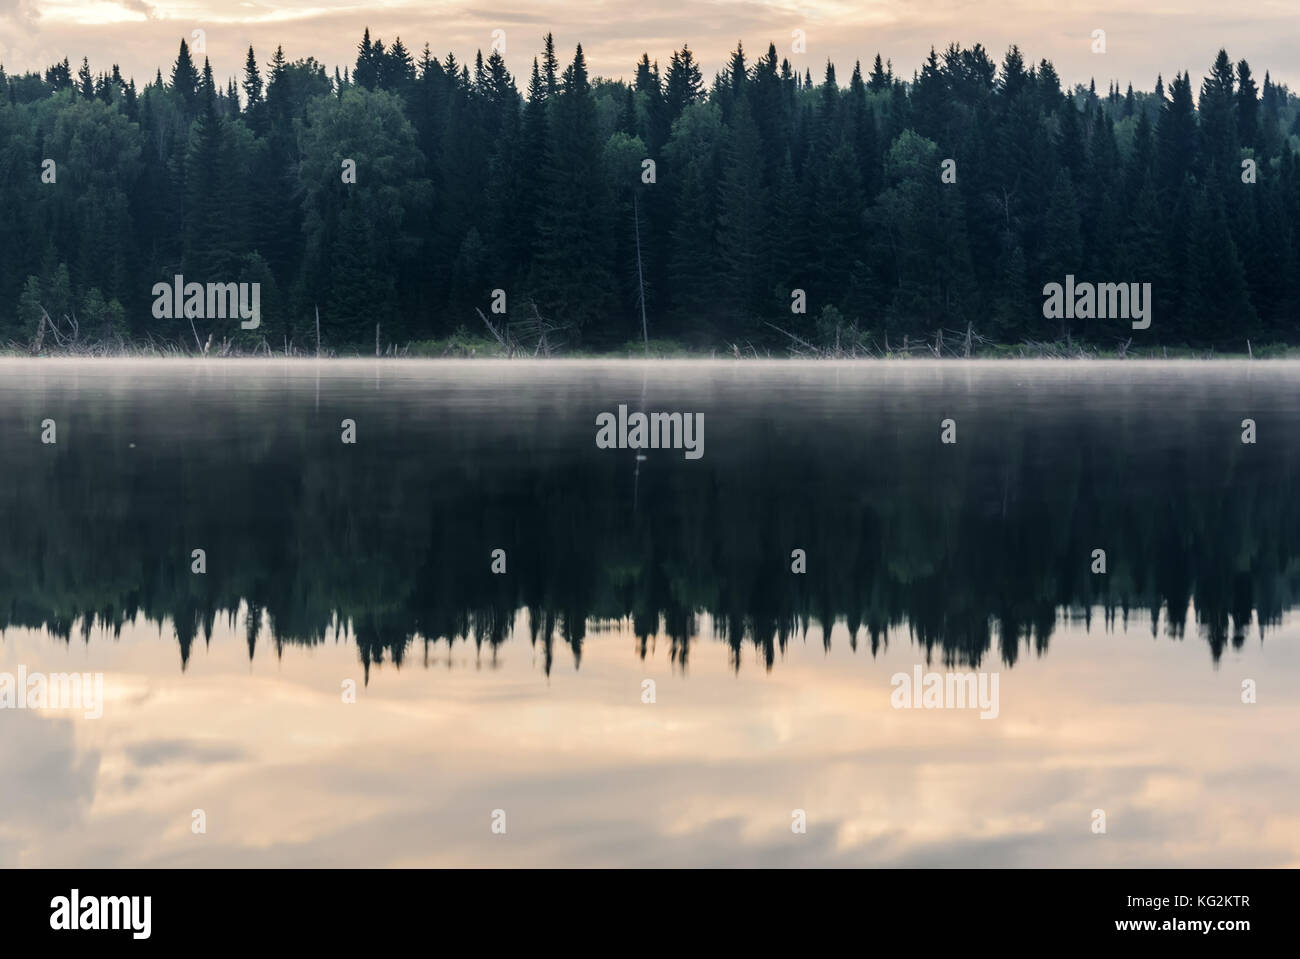 Vista panoramica con la foresta, nebbia e nuvole che riflette nell'acqua liscia del lago all'alba Foto Stock